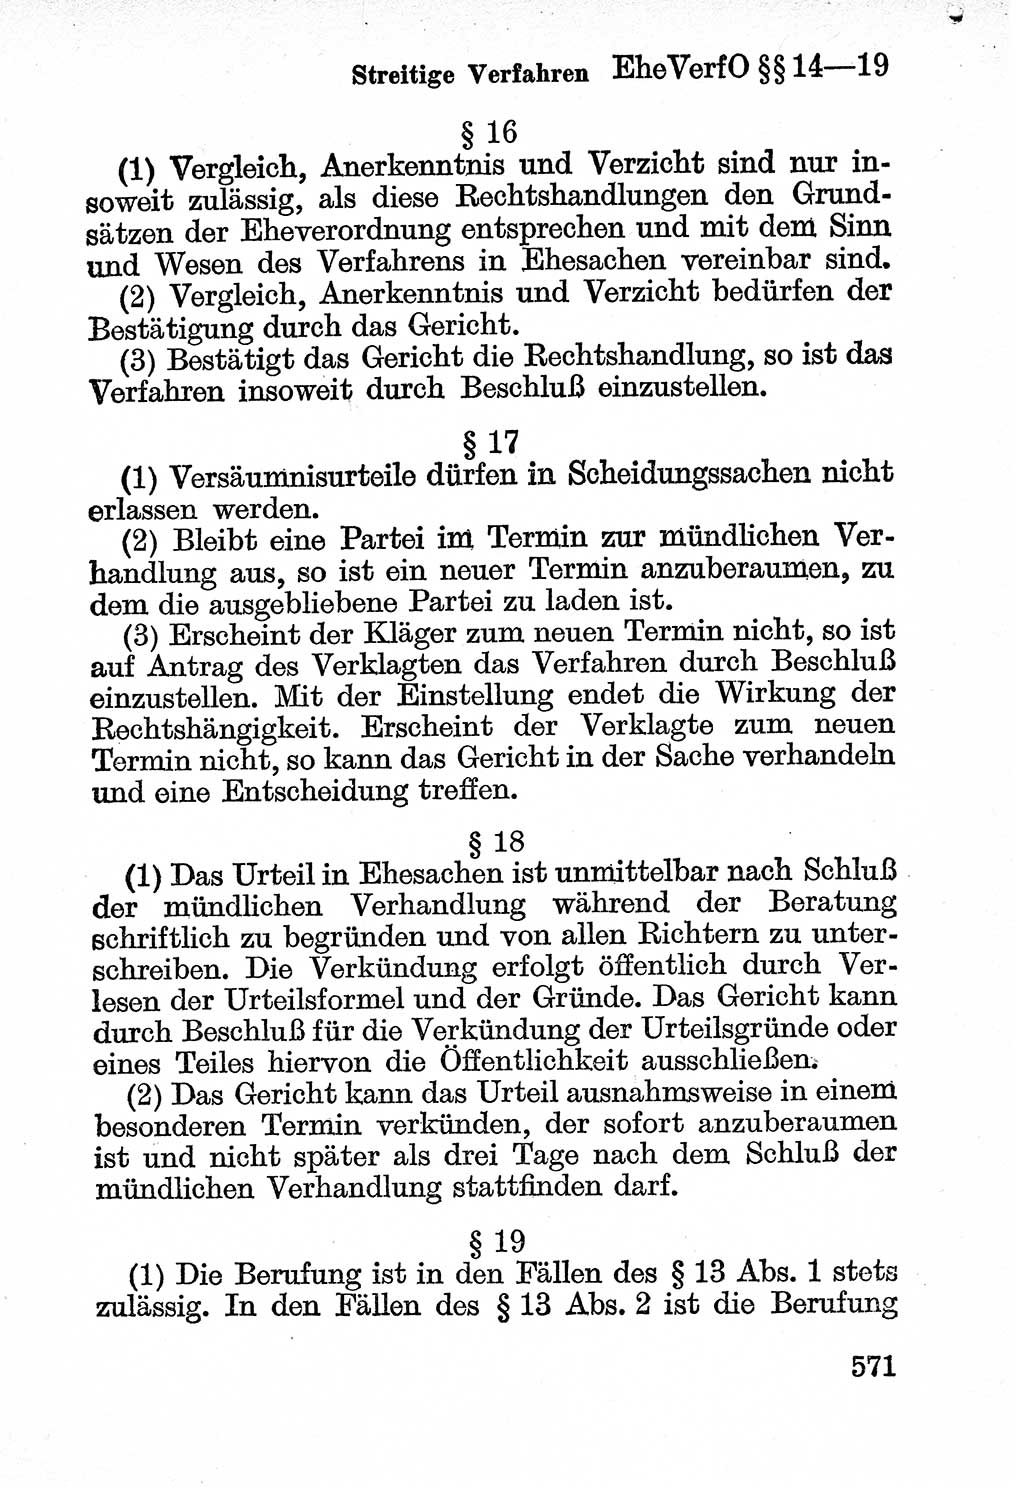 Bürgerliches Gesetzbuch (BGB) nebst wichtigen Nebengesetzen [Deutsche Demokratische Republik (DDR)] 1956, Seite 571 (BGB Nebenges. DDR 1956, S. 571)